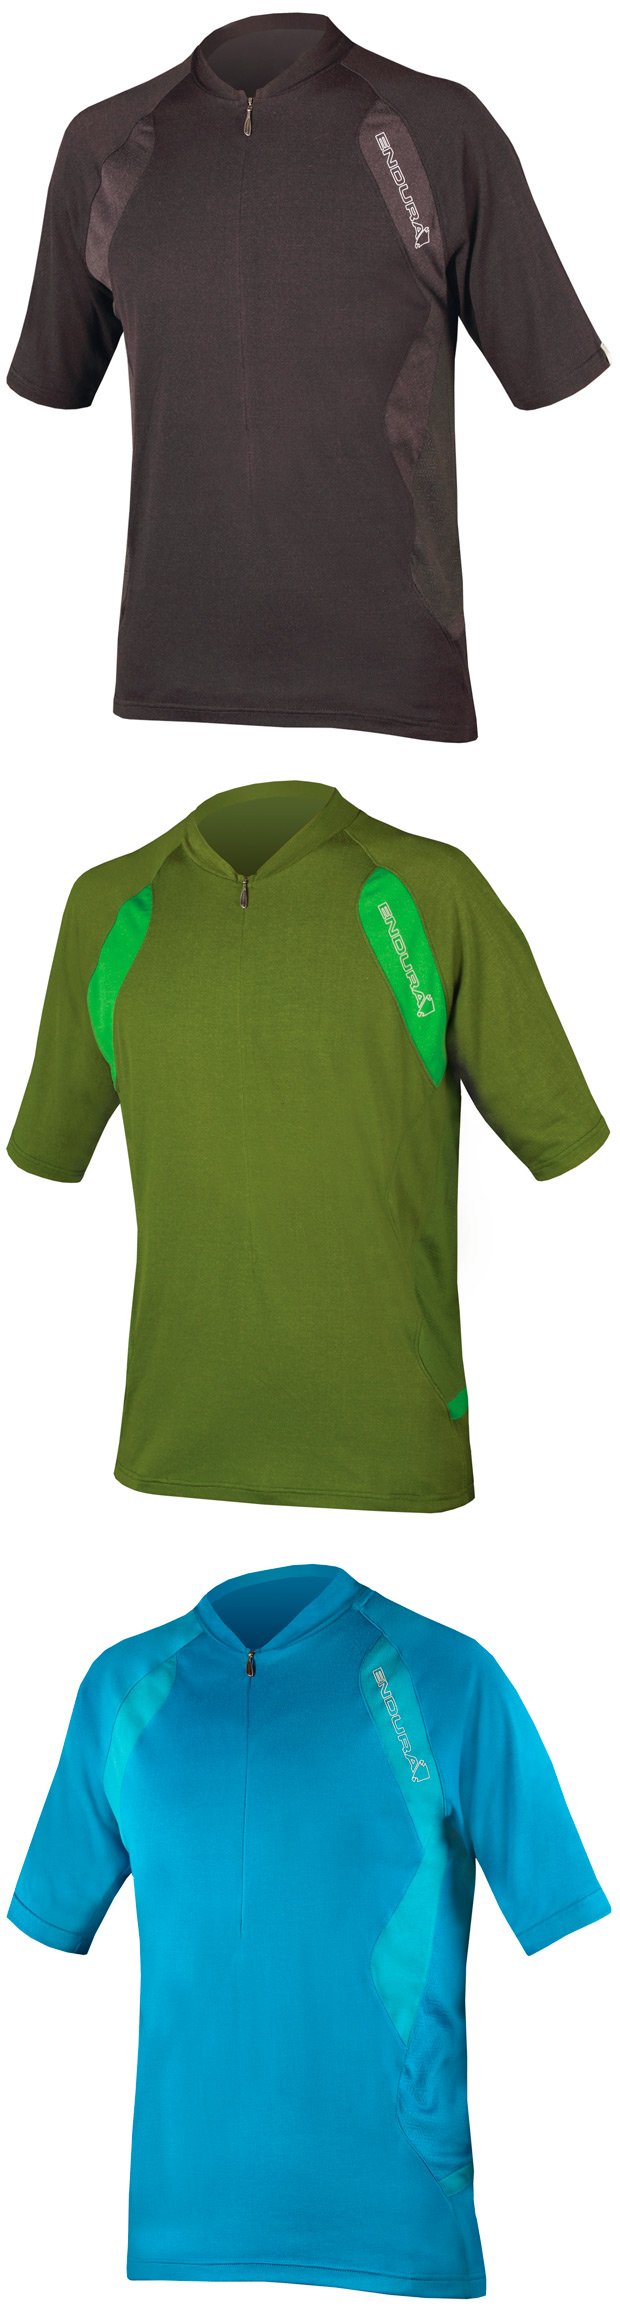 Enduro con estilo: Nuevas camisetas y maillots Endura Singletrack Lite